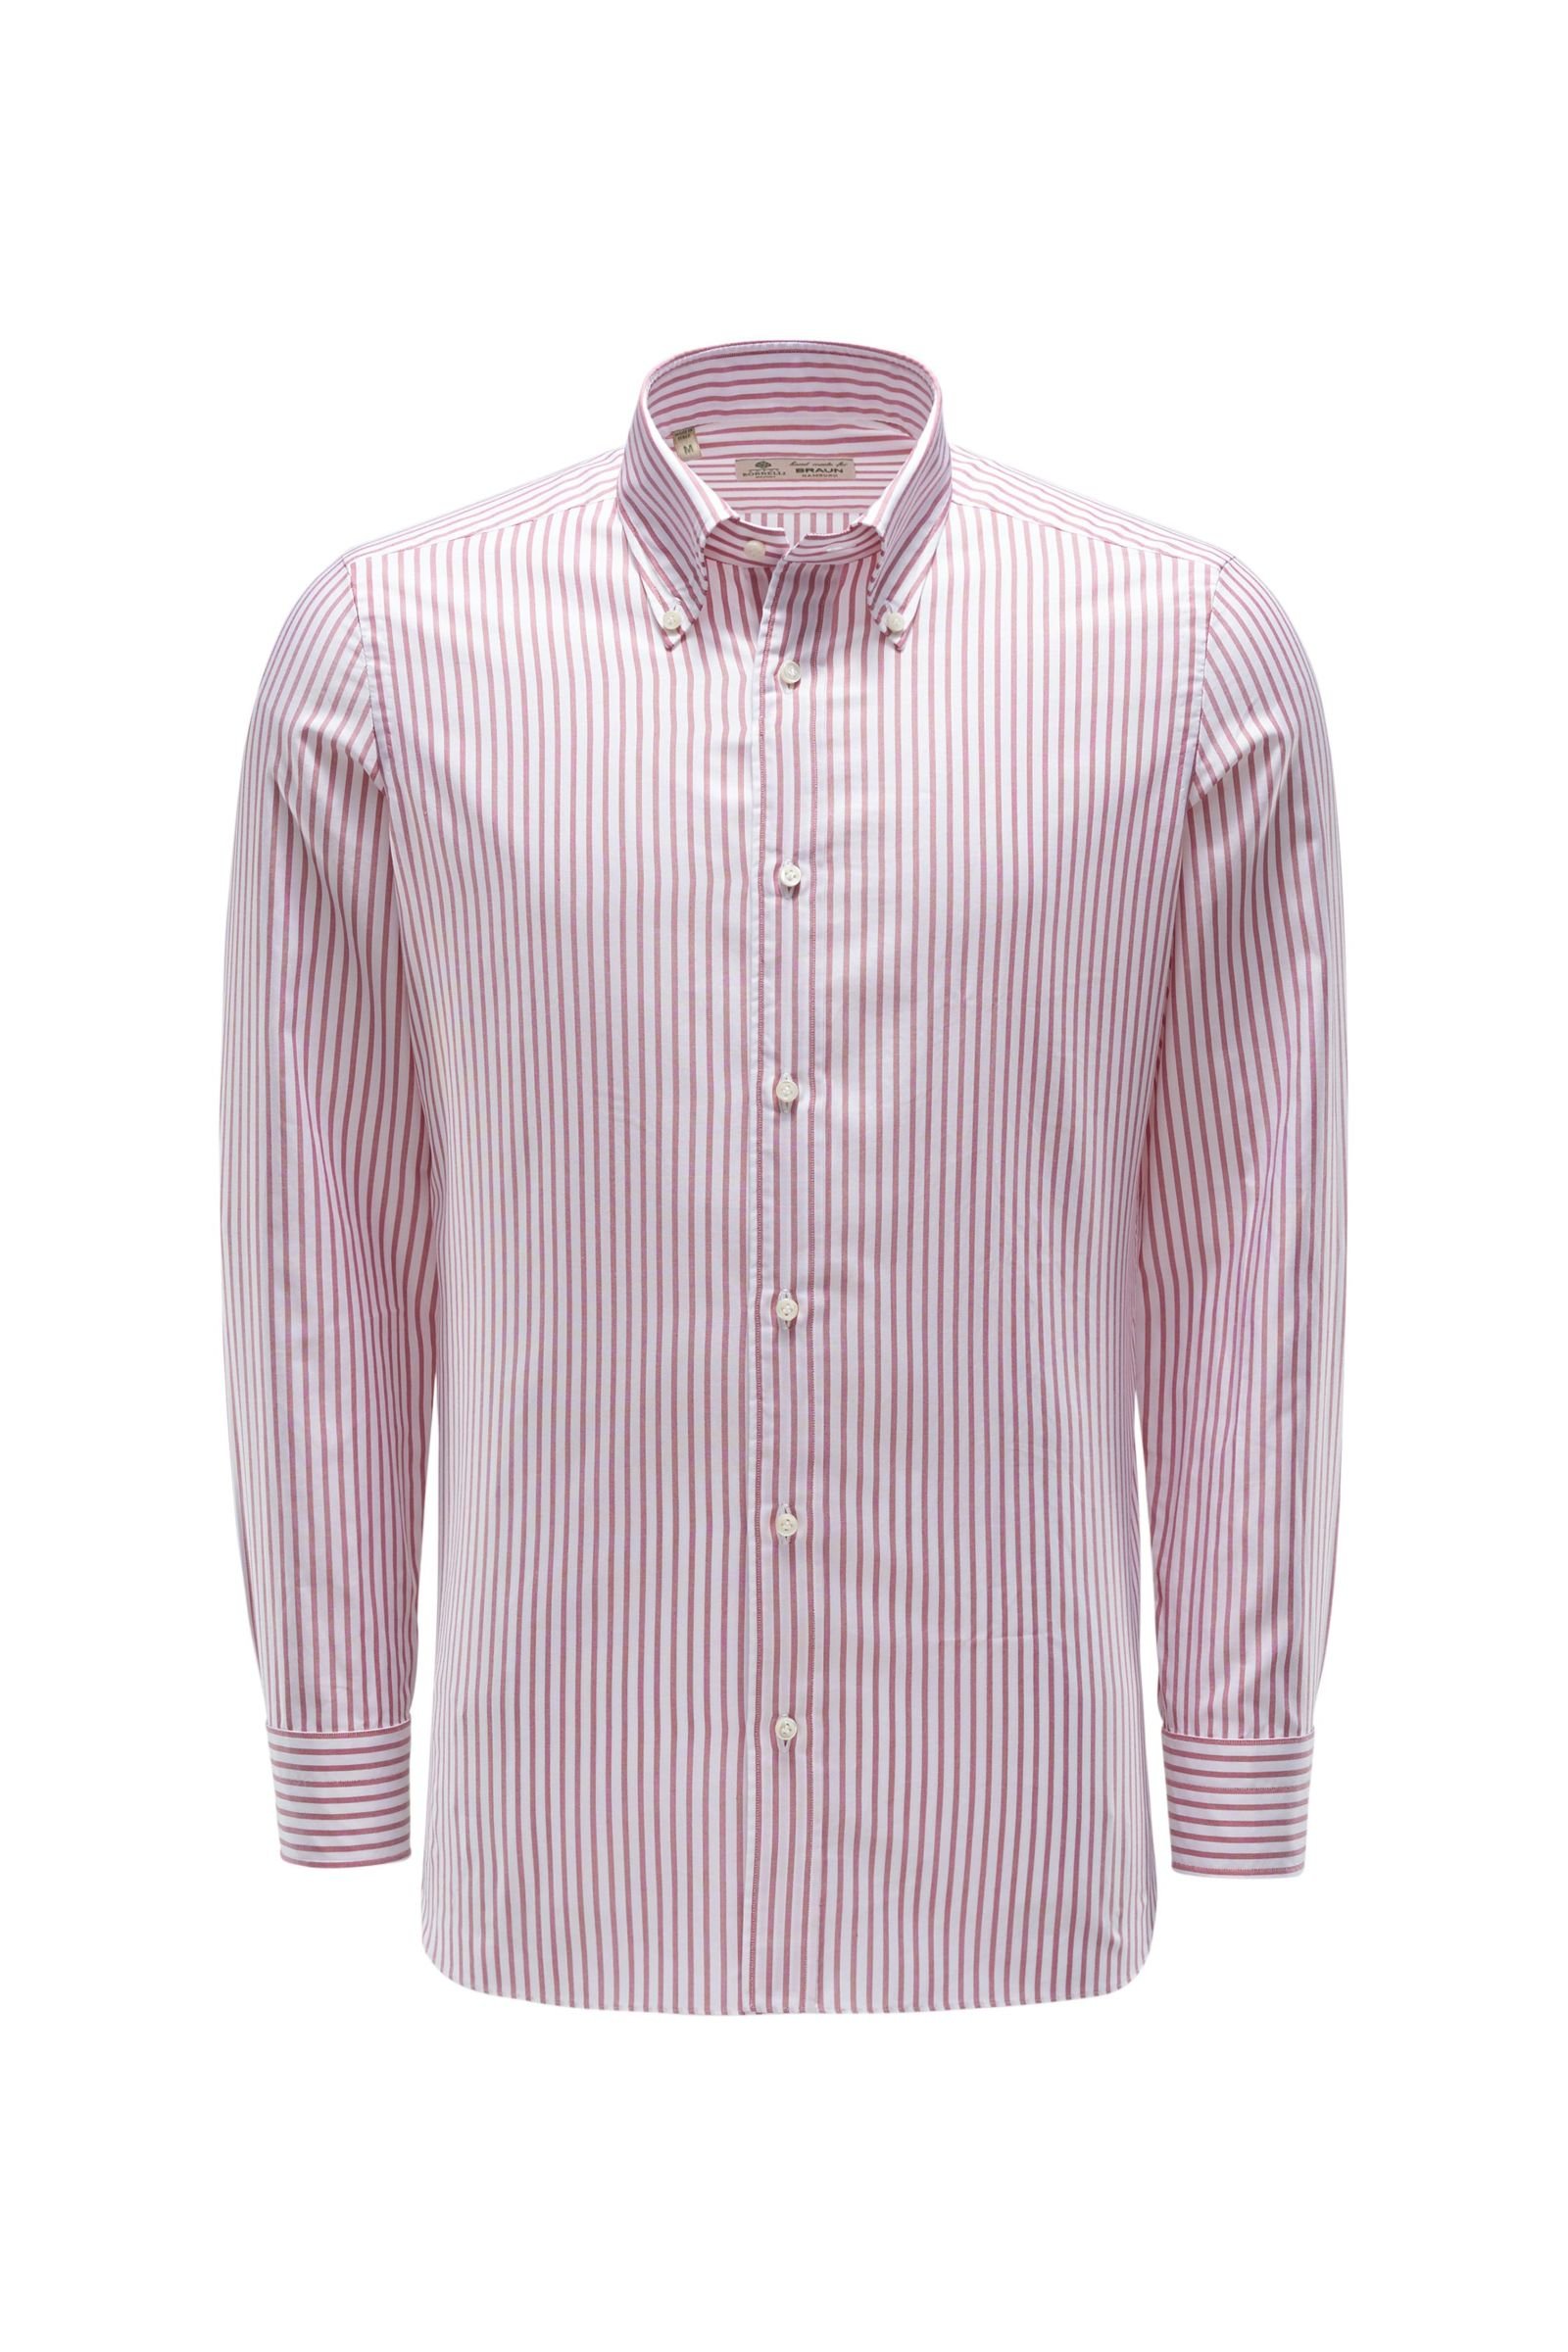 Oxfordhemd Button-Down-Kragen rot/weiß gestreift